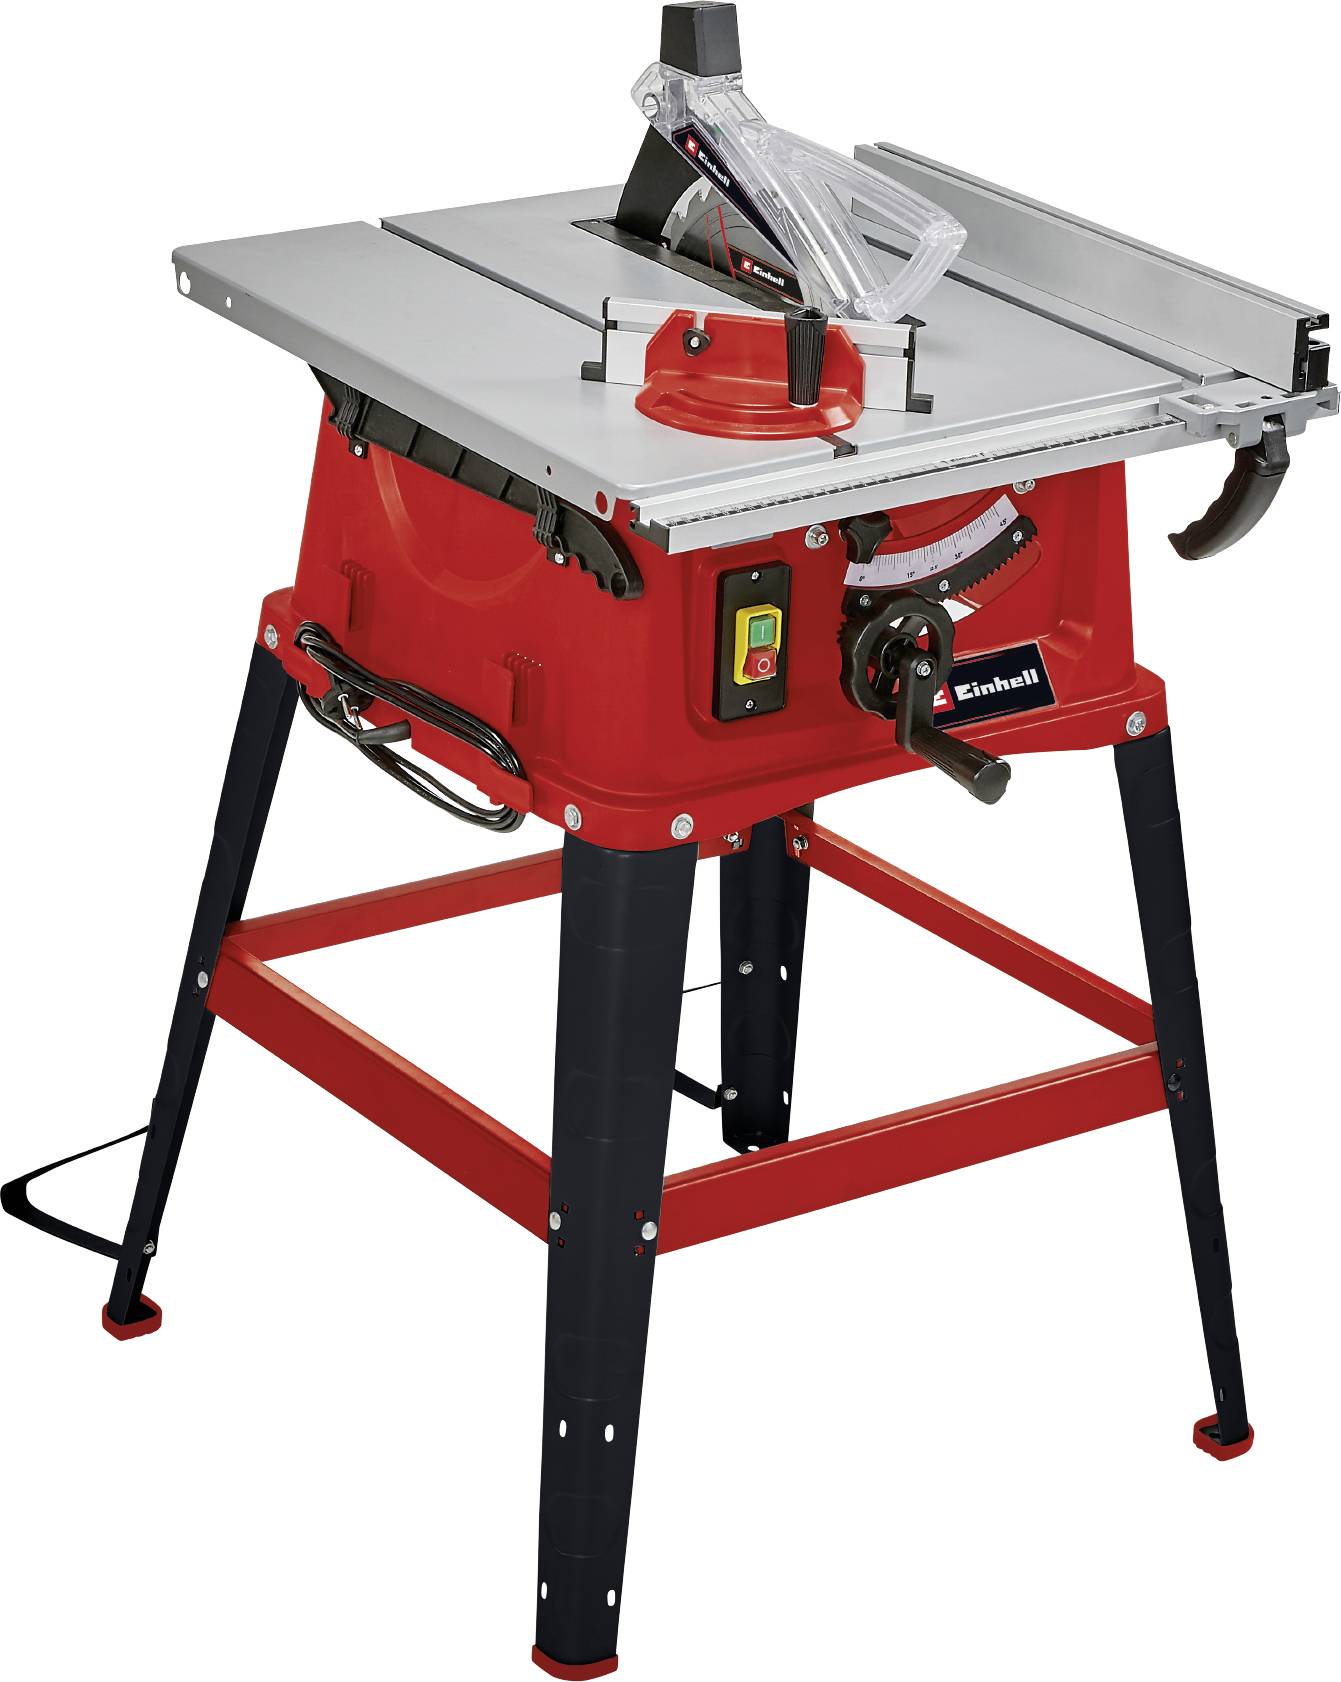 einhell-tc-ts-254-u-table-saw-254-mm-1800-w-240-v-conrad